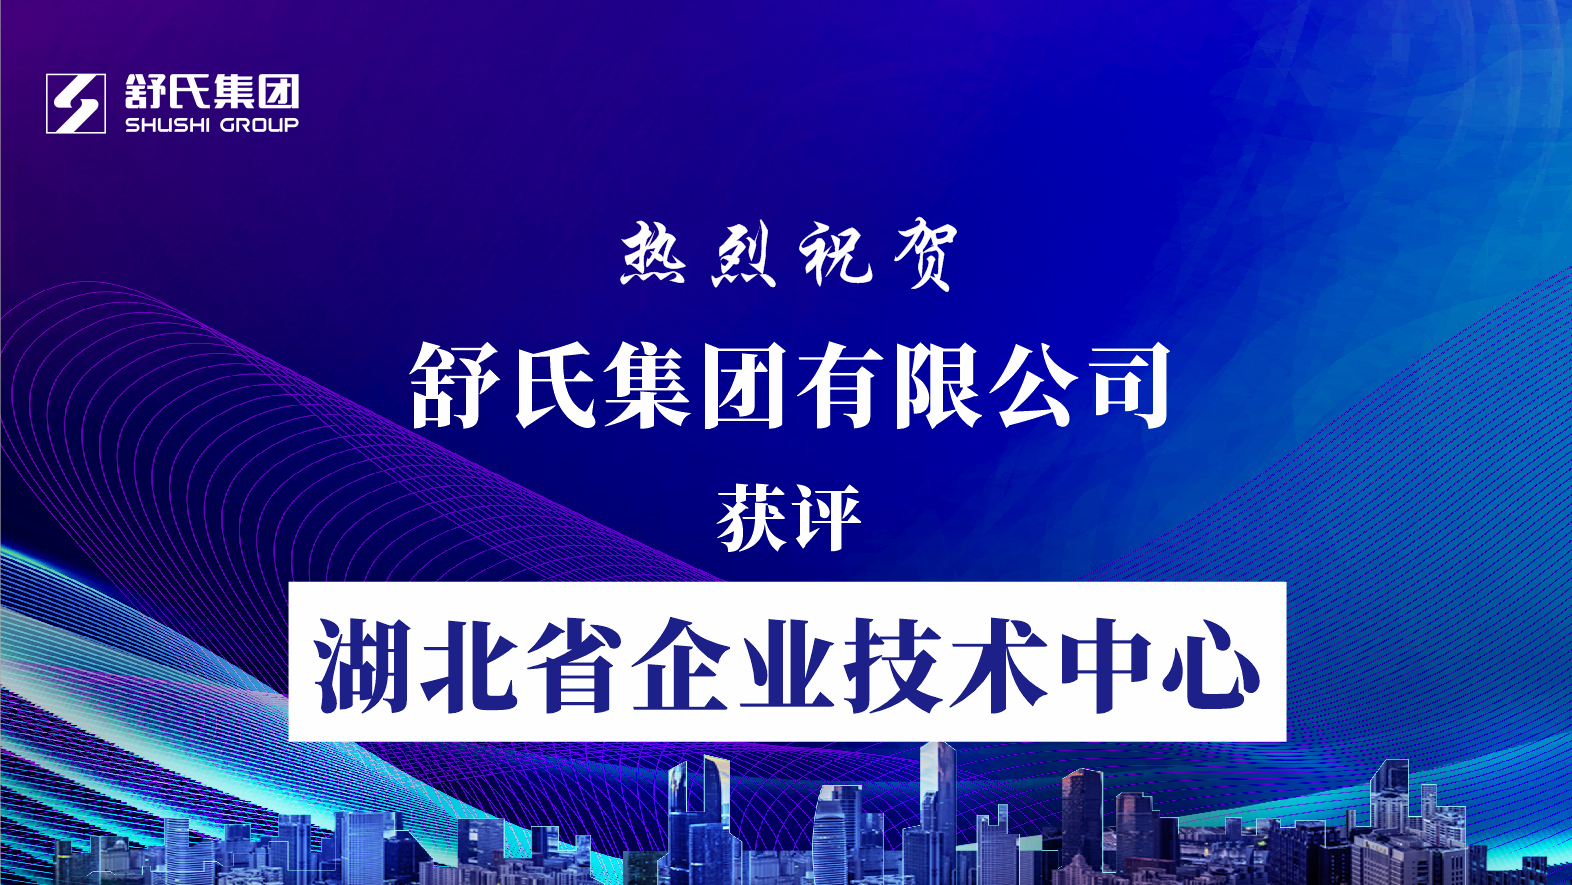 喜訊播報·舒氏集團獲評湖北省企業技術中心